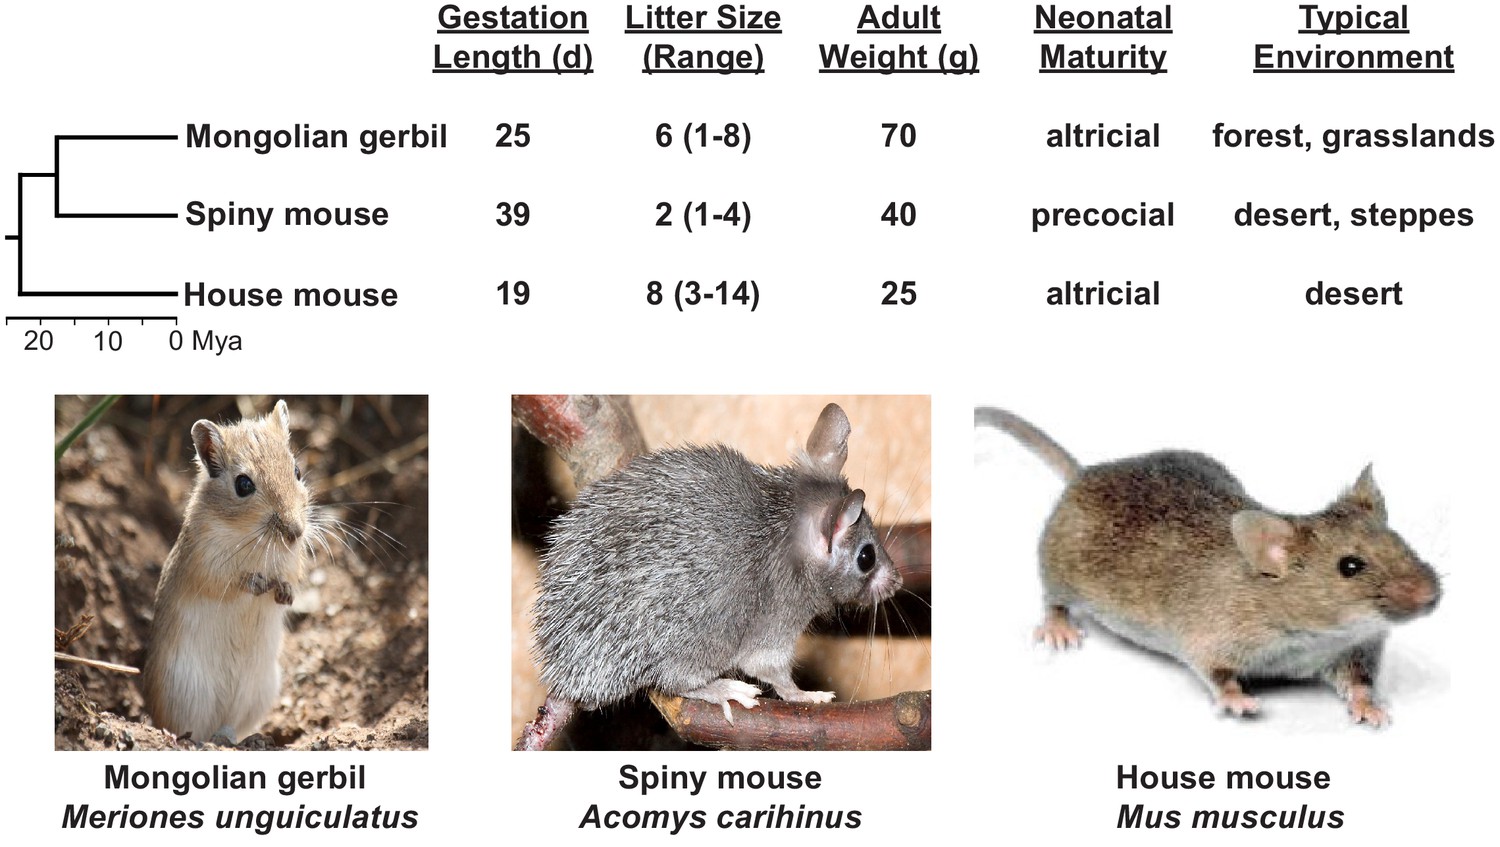 pocket mouse evolution